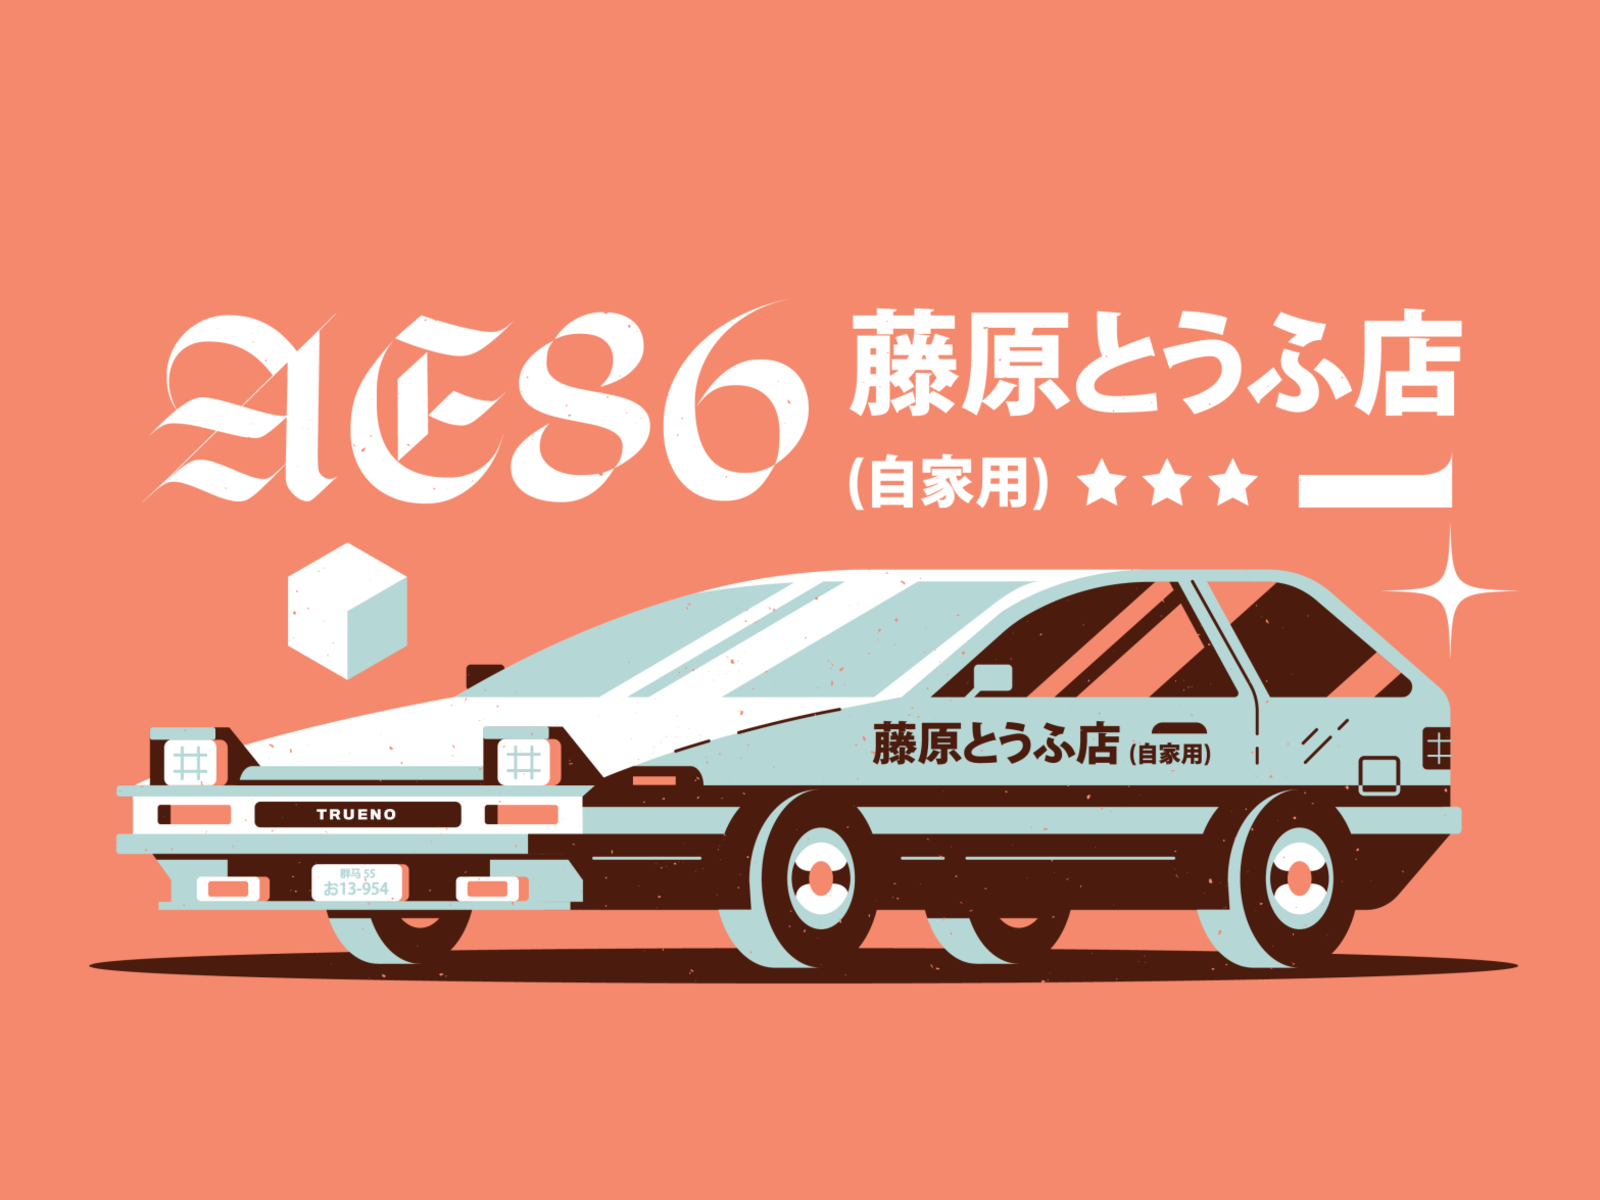 Done ✓ Anime style AE86 Trueno... - Pretty Messy Studio | Facebook